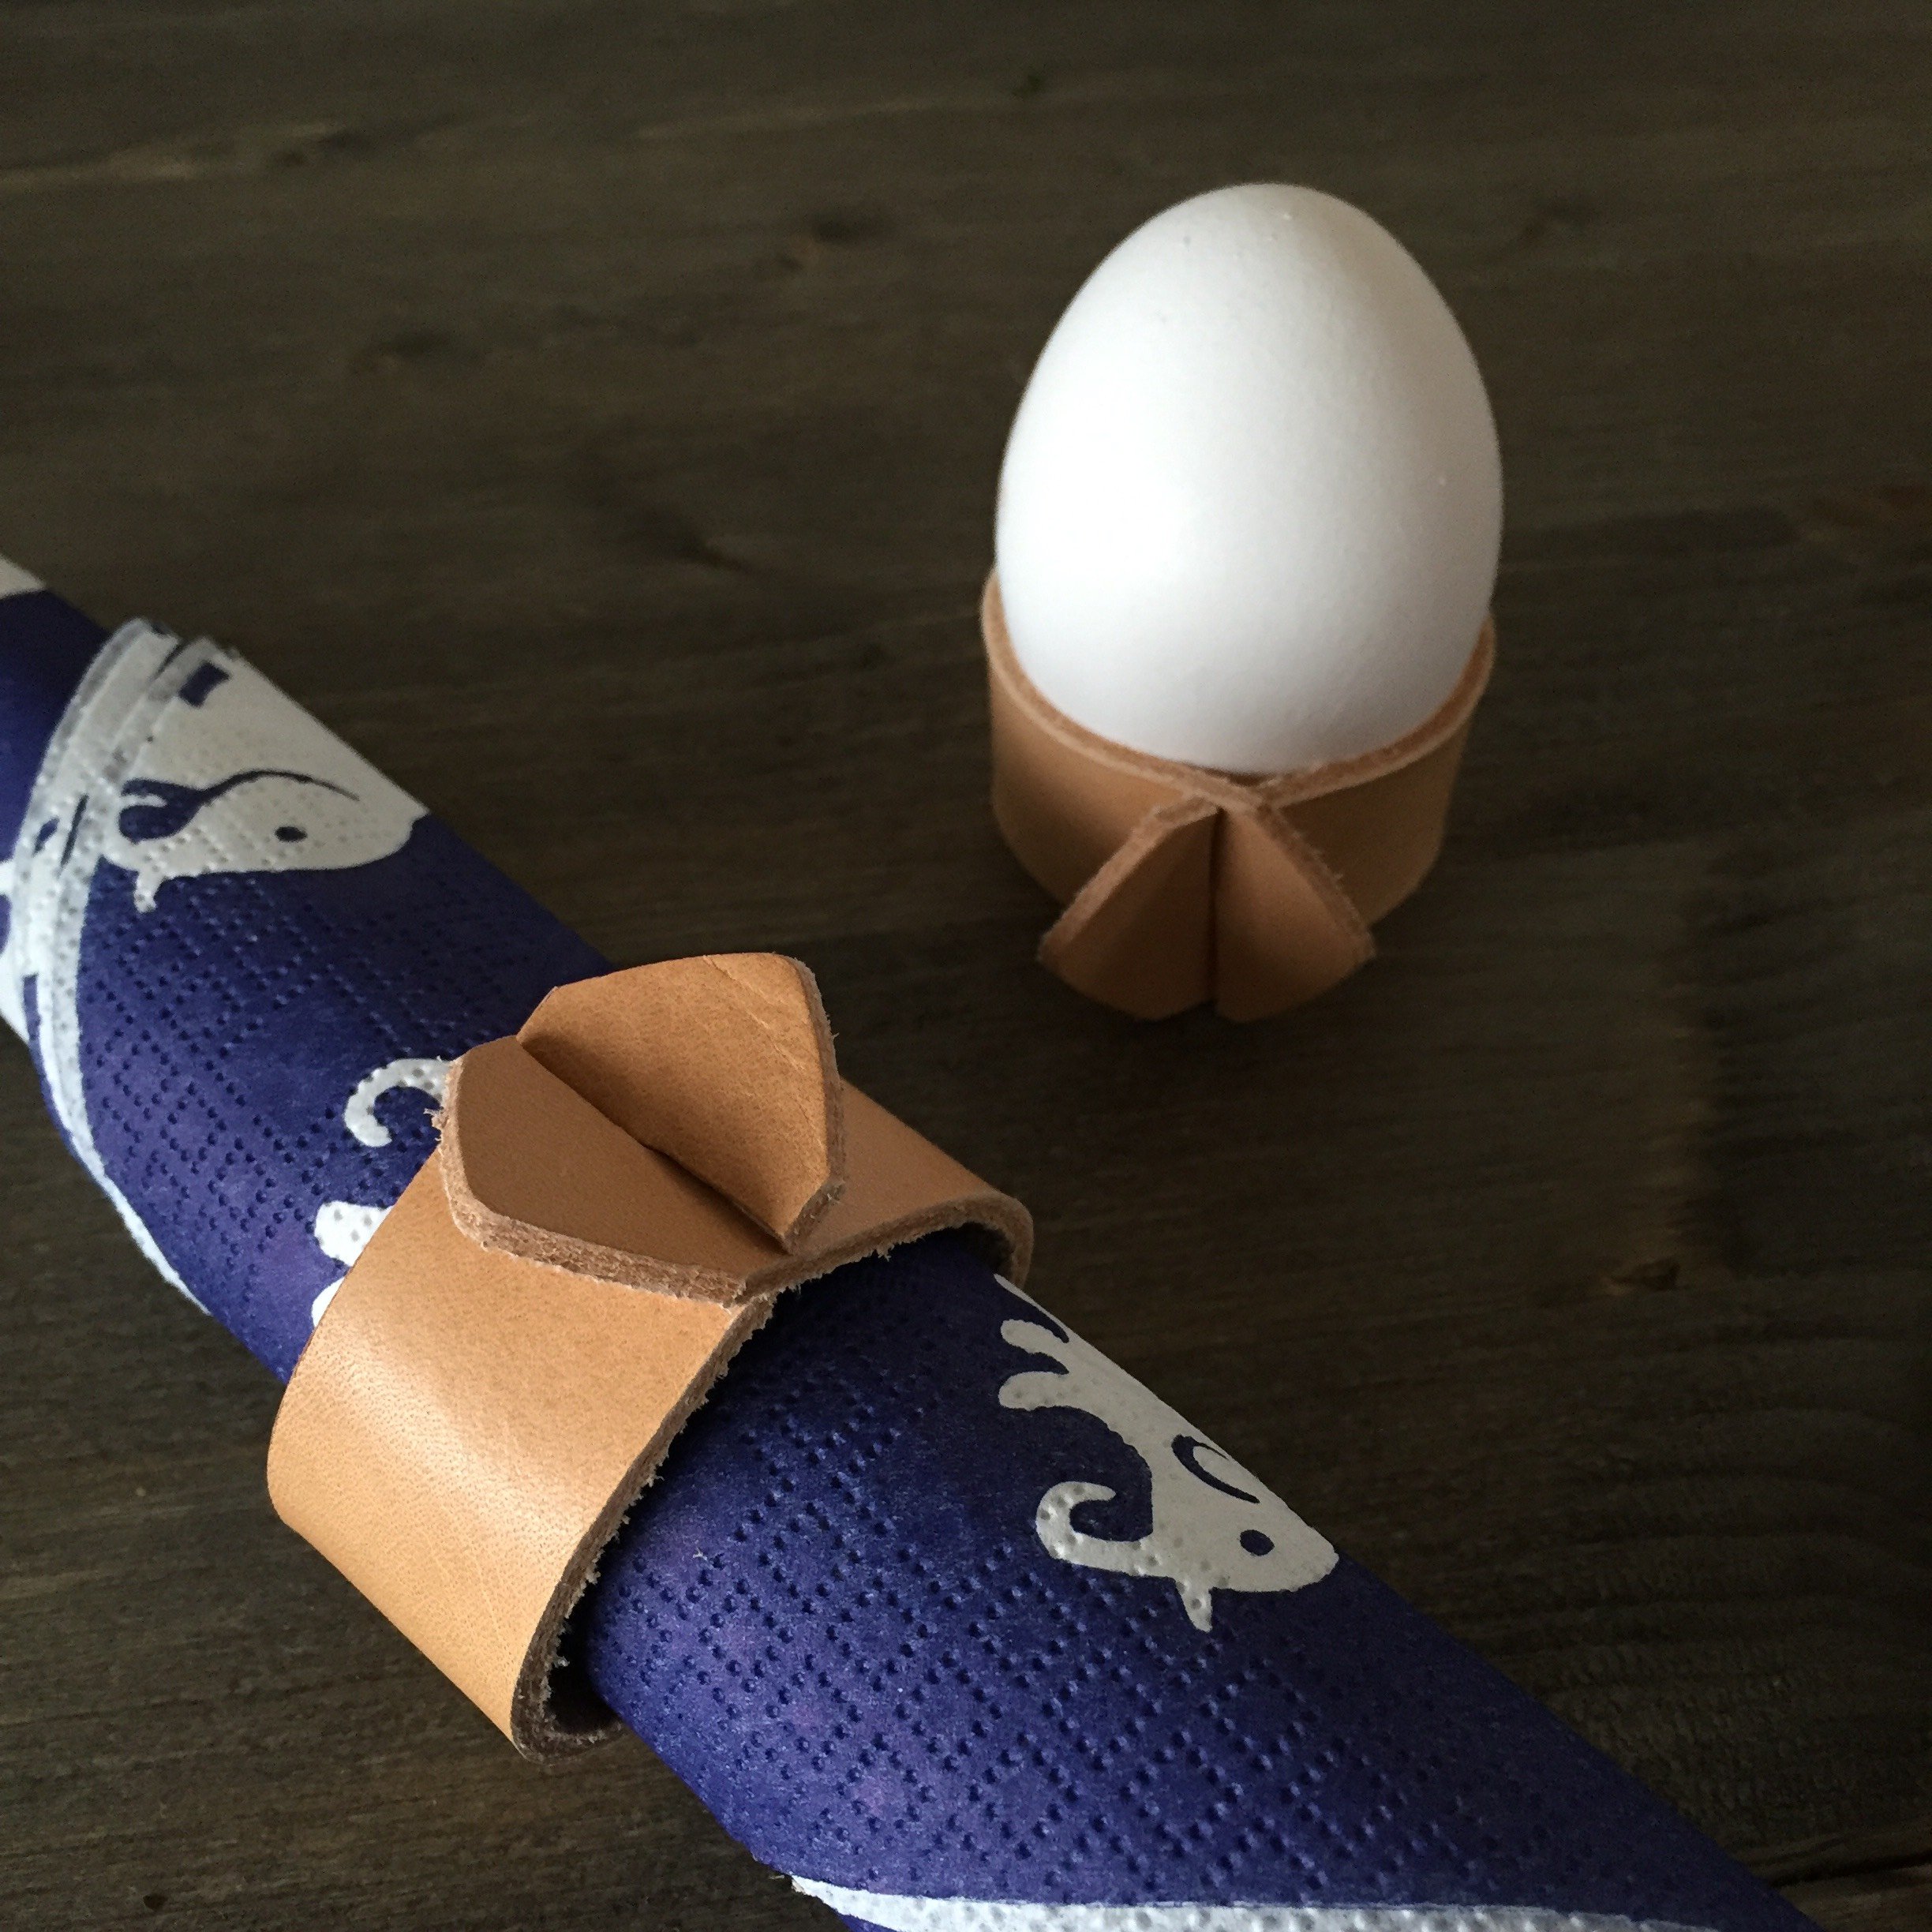 Egg Cup / Napkin Holder - Äggkopp / Servettring i läder